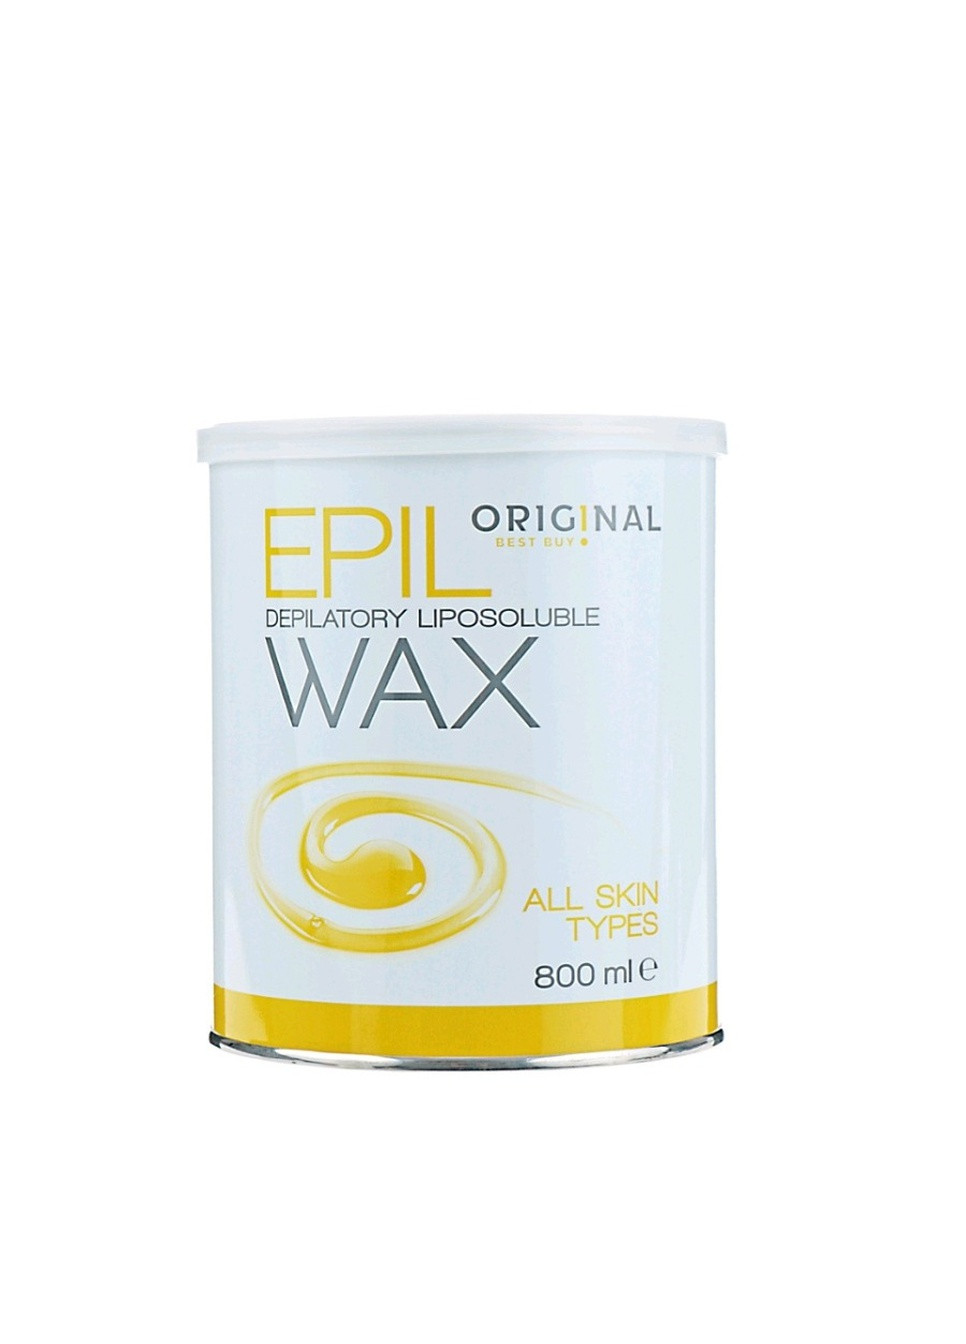 Воск для депиляции всех типов кожи 800 мл All Skin Types Original Best Buy epil wax (259115983)